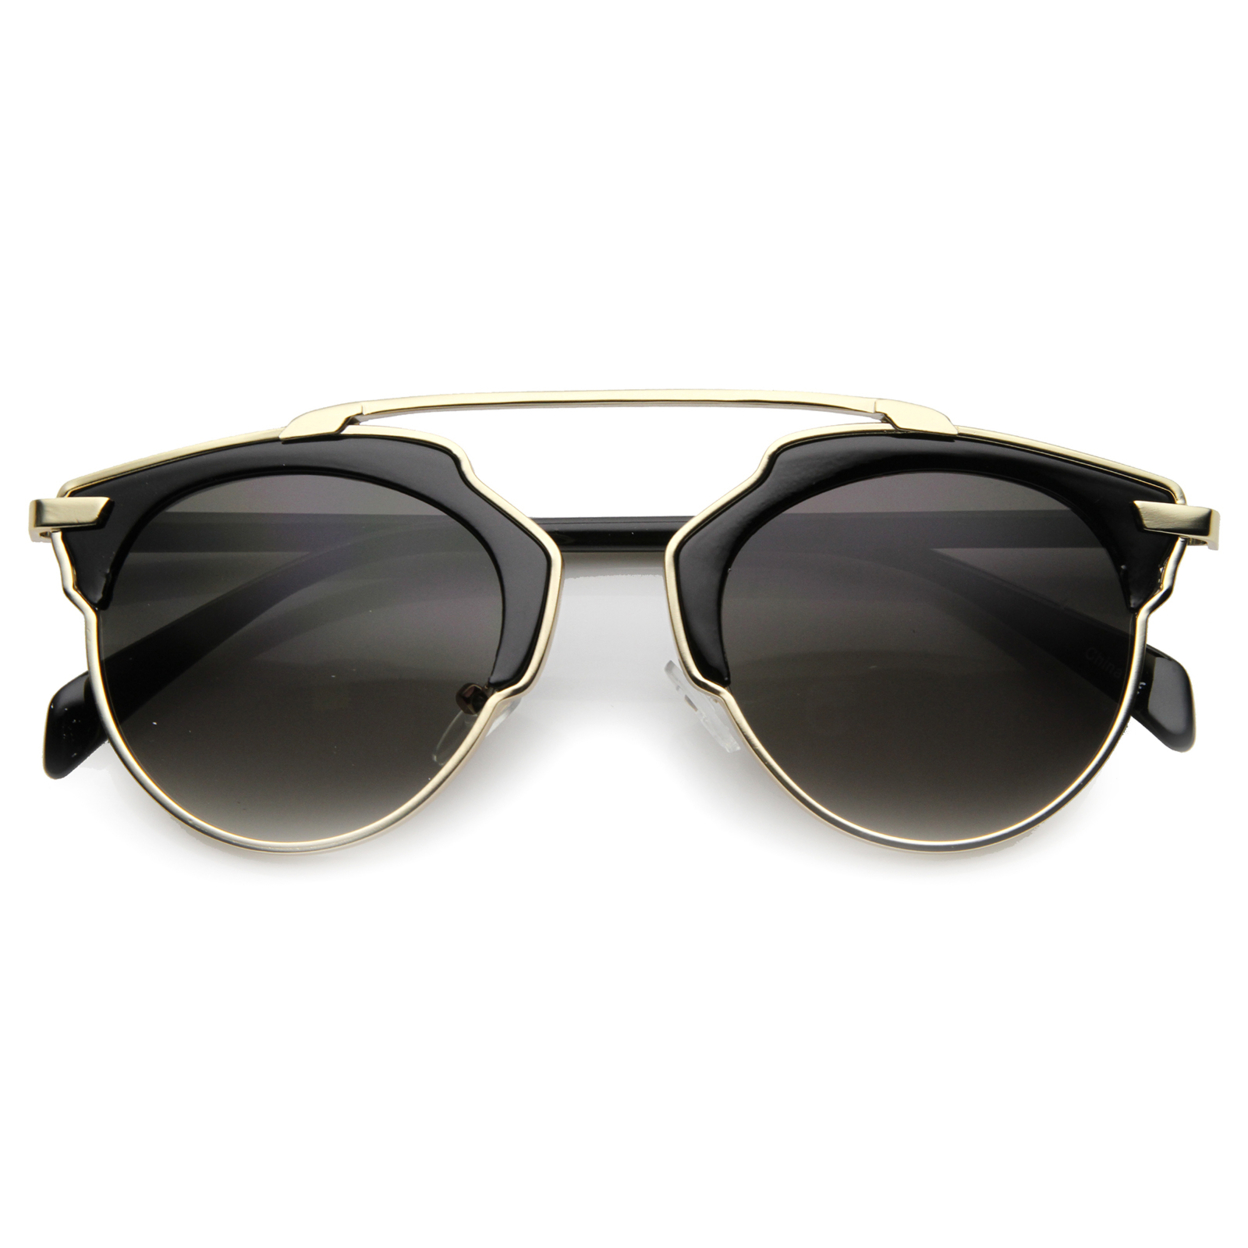 Unisex Horn Rimmed Sunglasses With UV400 Protected Composite Lens 9859 - Tortoise-Gunmetal / Green